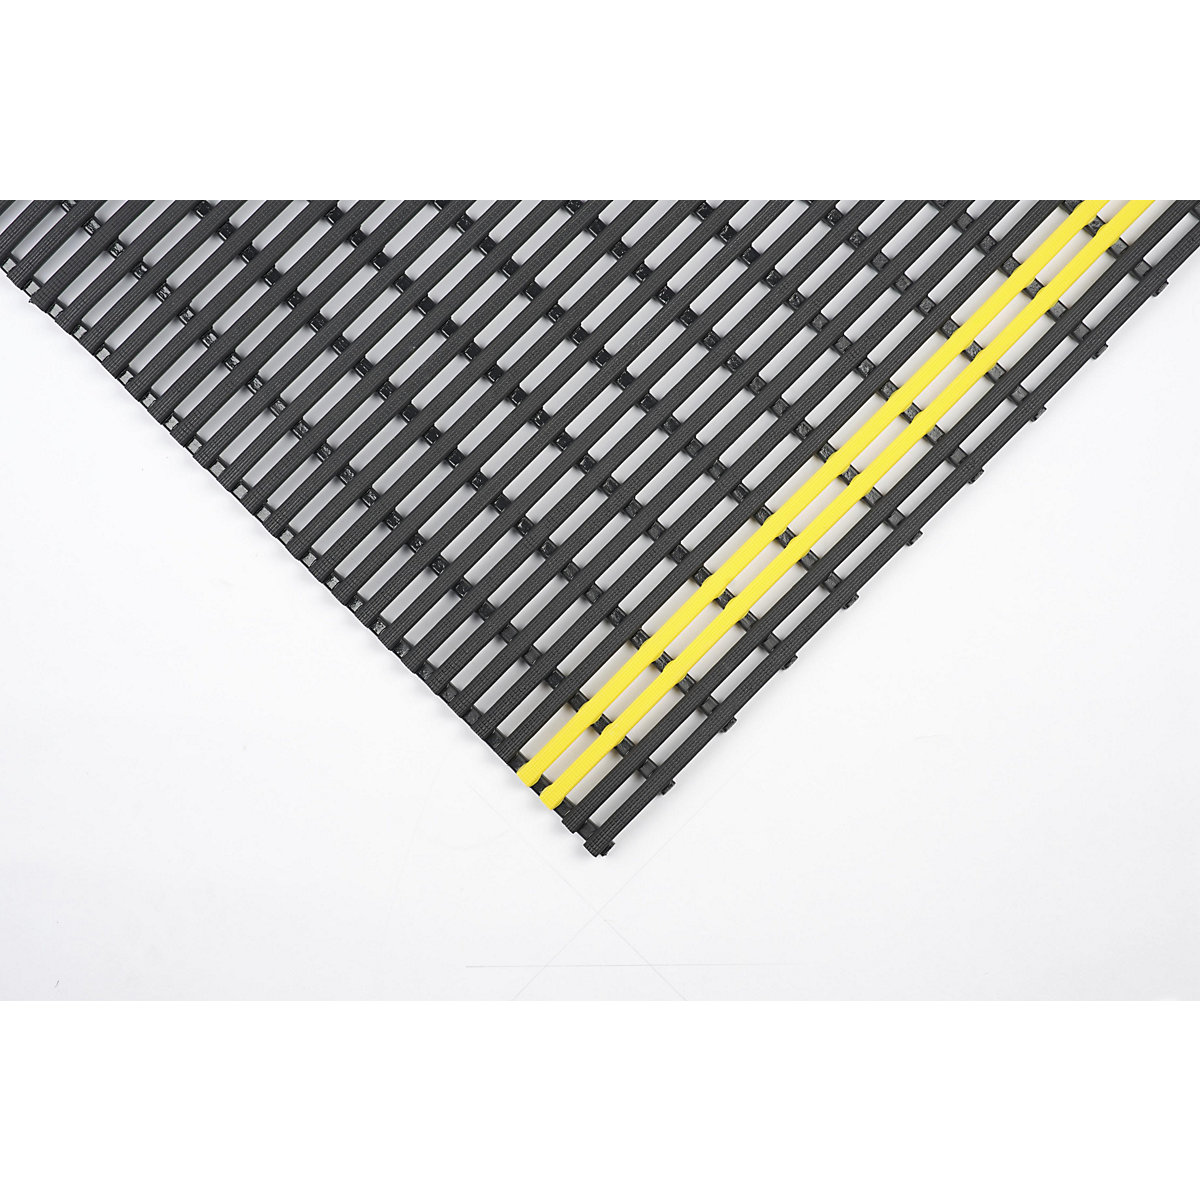 Protuklizna podloga, reciklirani PVC, po dužnom metru, širina 800 mm, u crnoj/žutoj boji-4